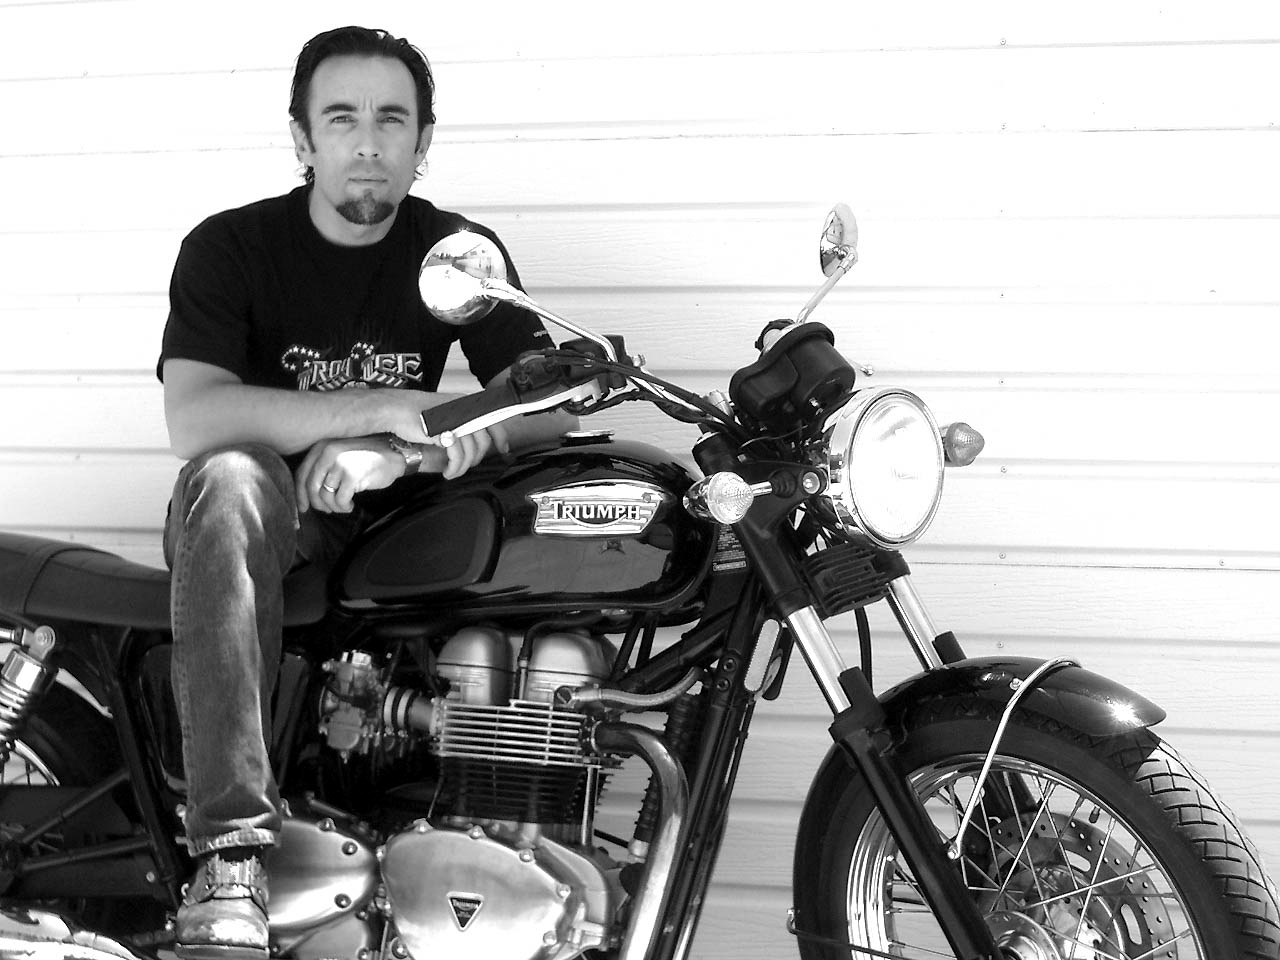 Francesco Quinn, actor and avid rider, drops dead at 48